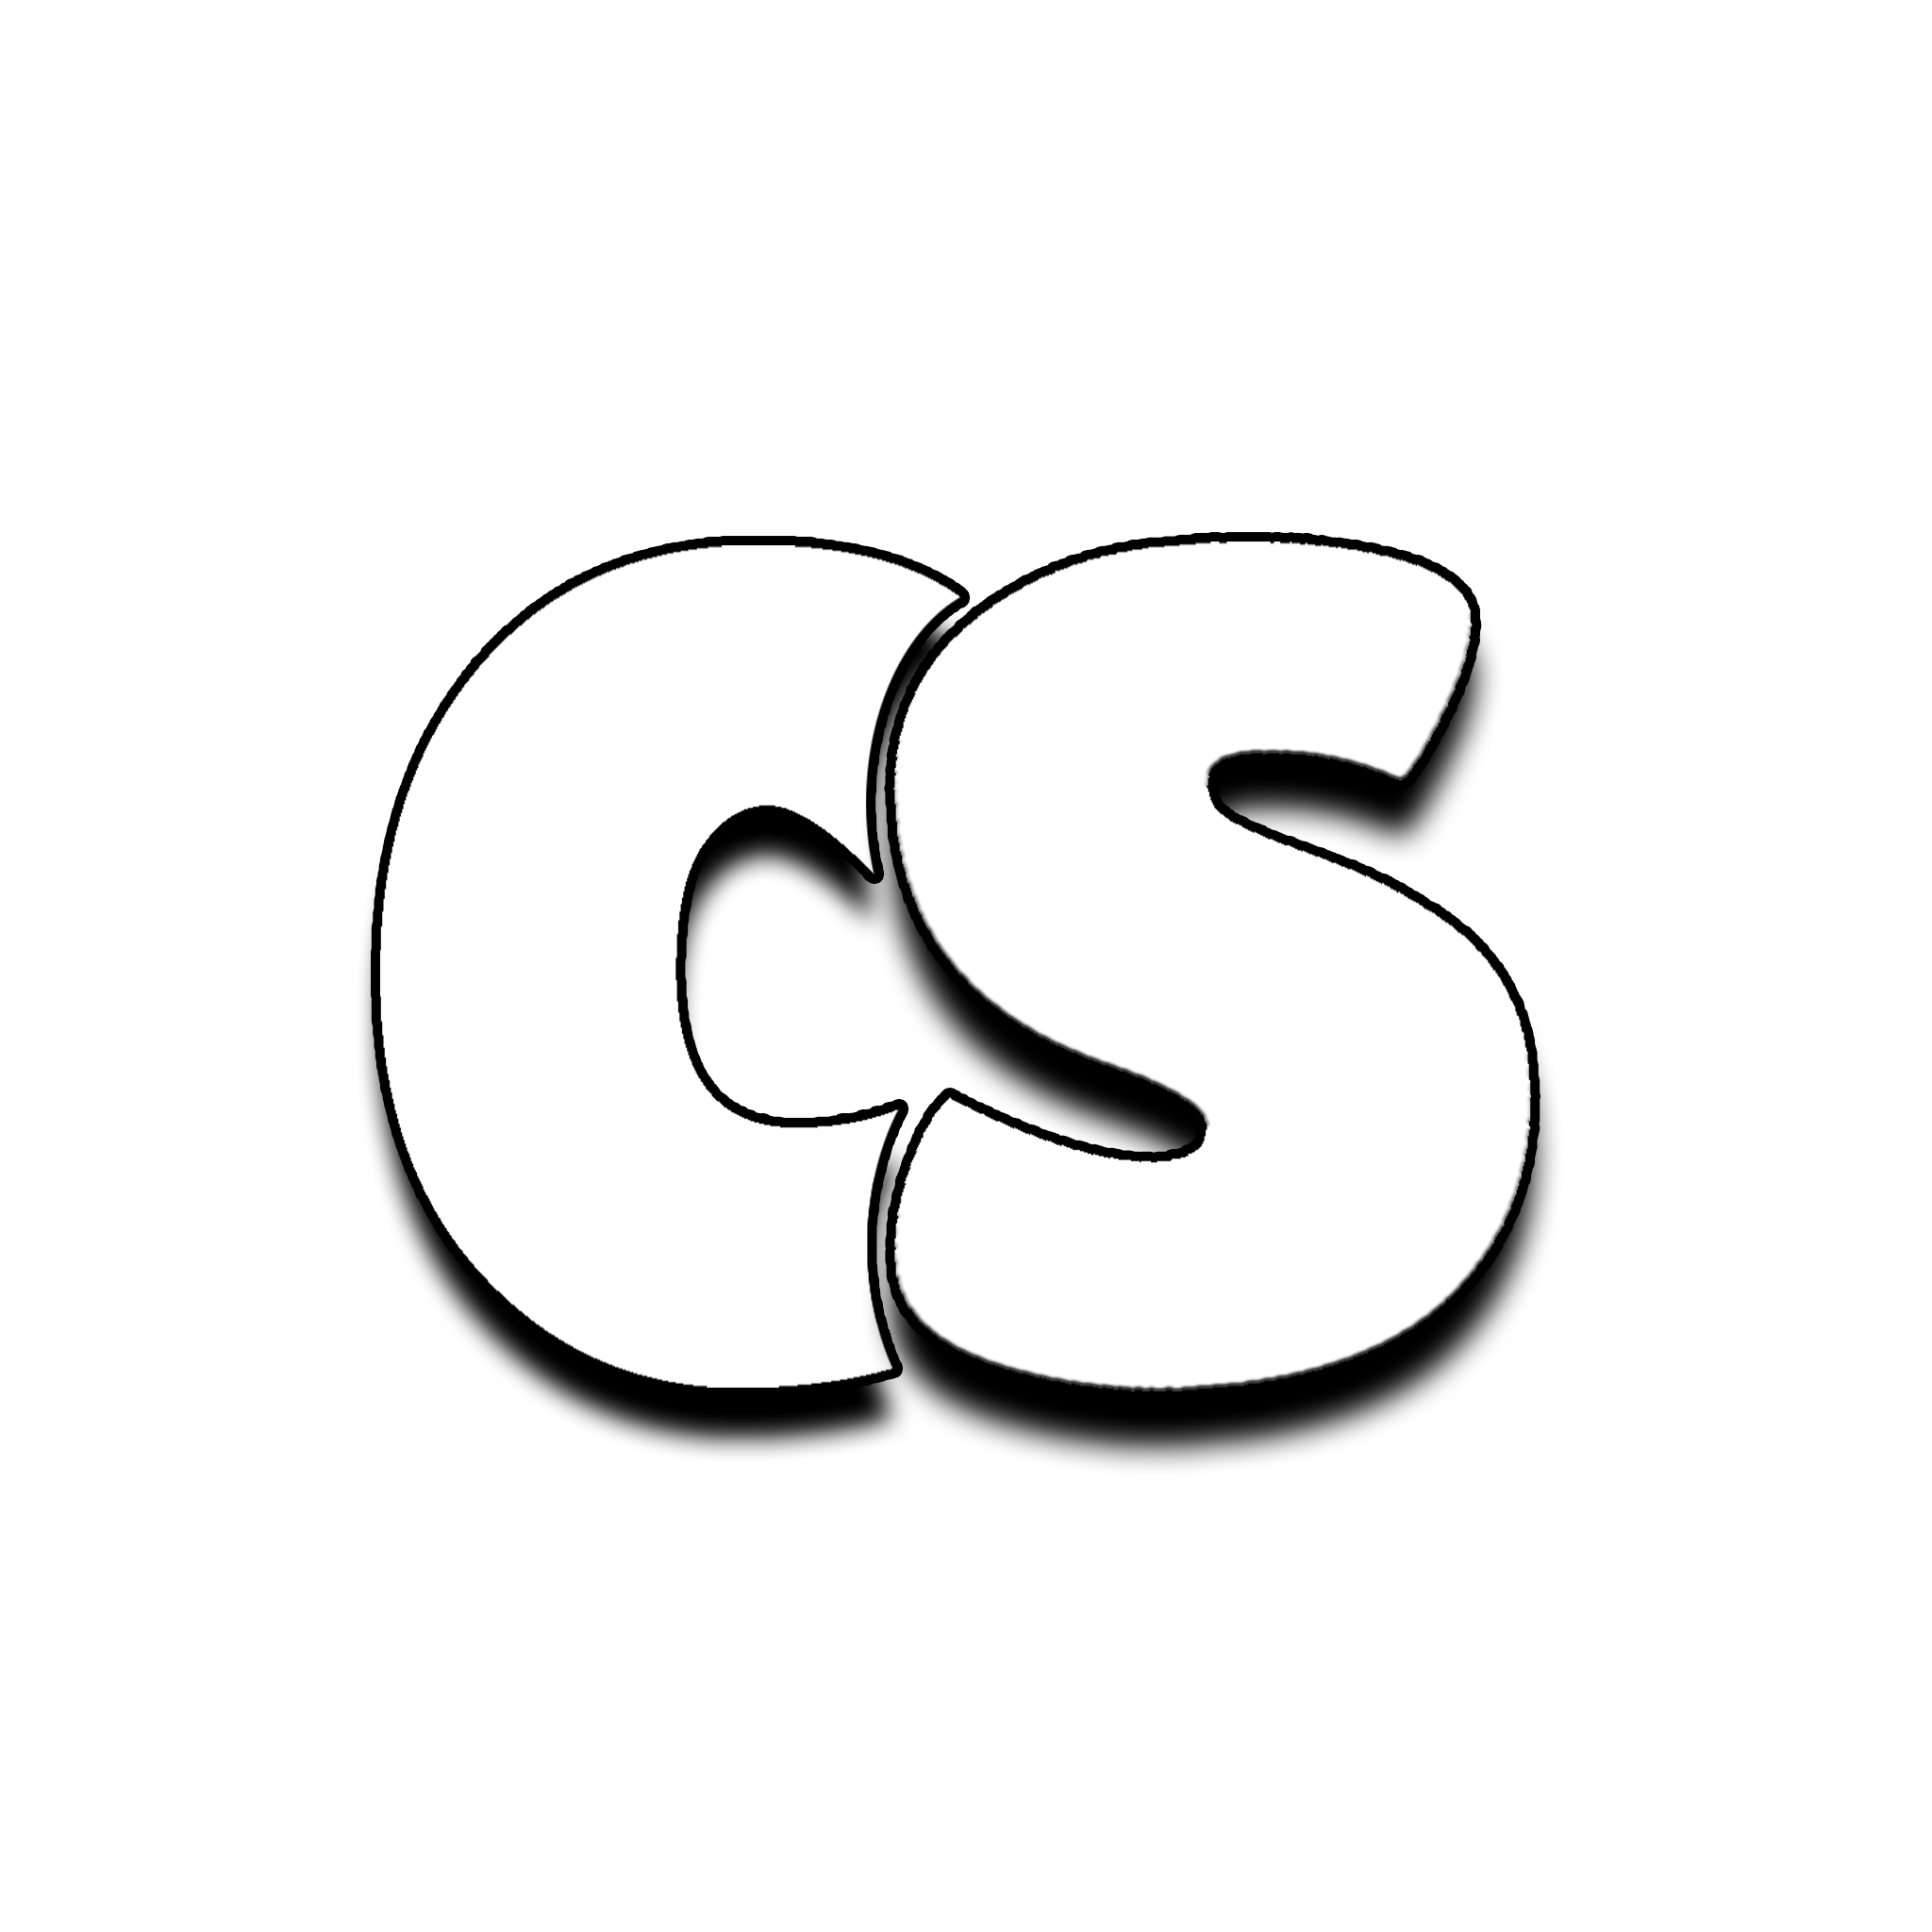 cardak studios logo